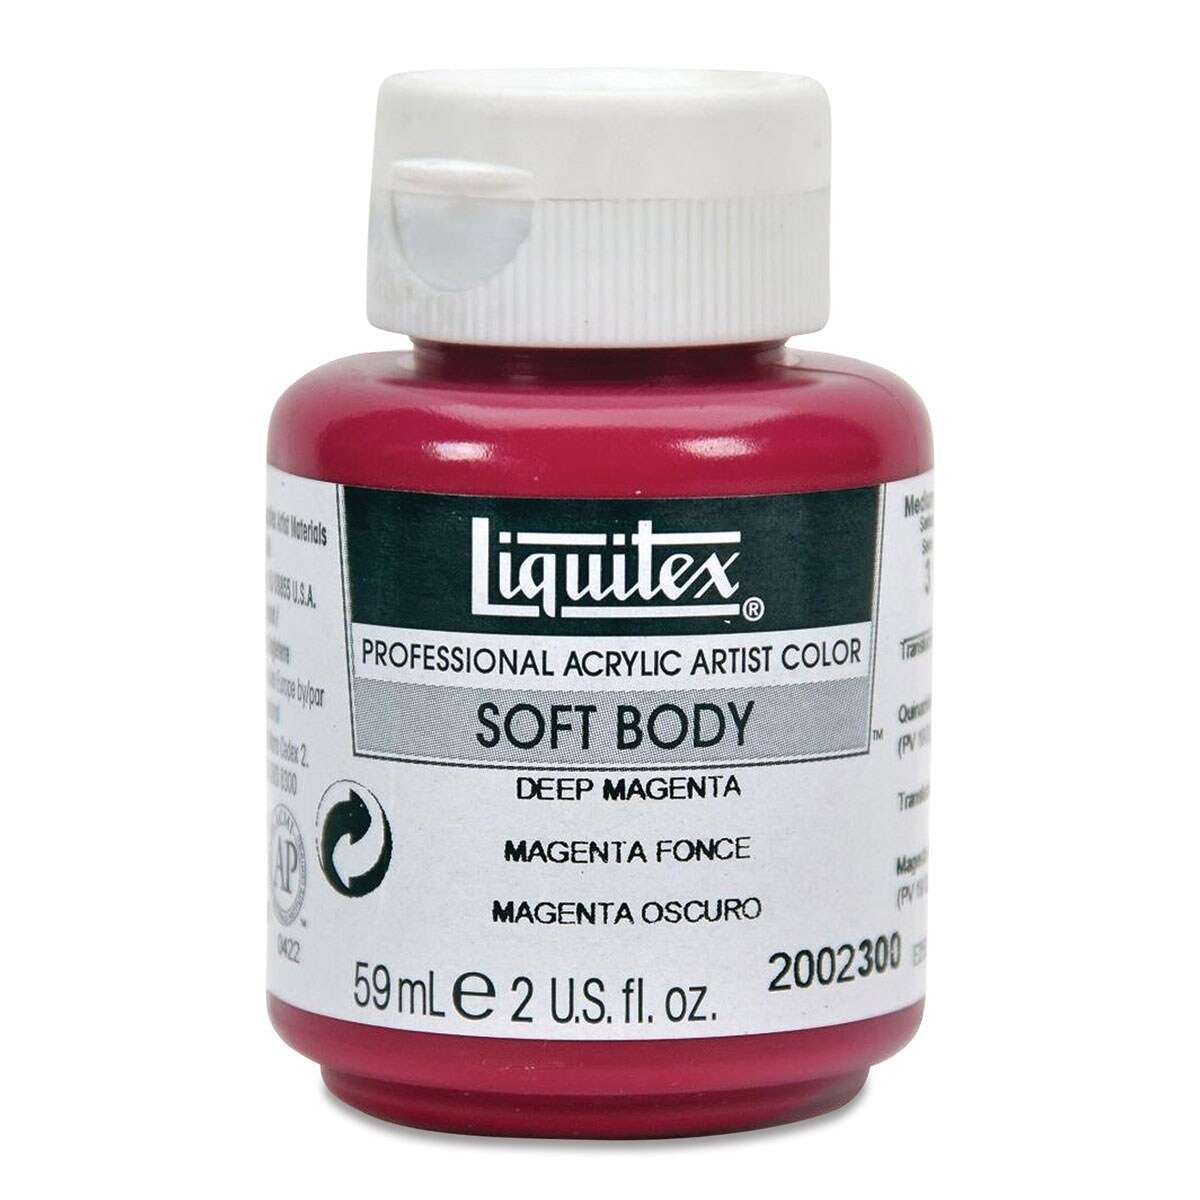 Liquitex Soft Body Artist Acrylics - Deep Magenta, 59 ml bottle